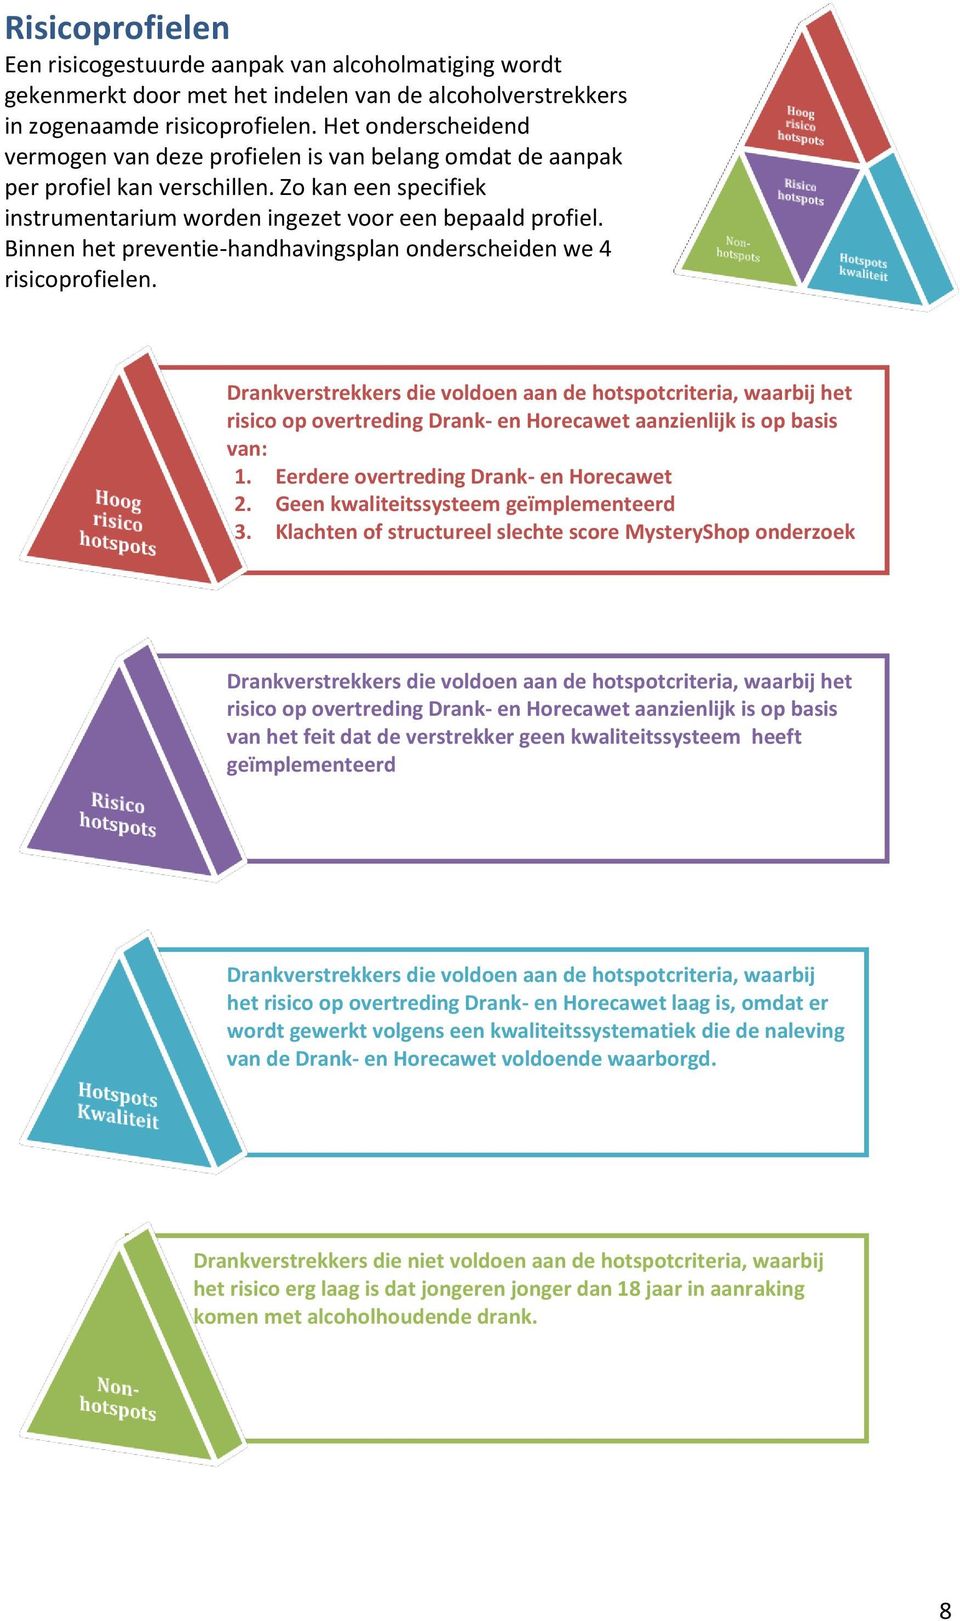 Binnen het preventie-handhavingsplan onderscheiden we 4 risicoprofielen.